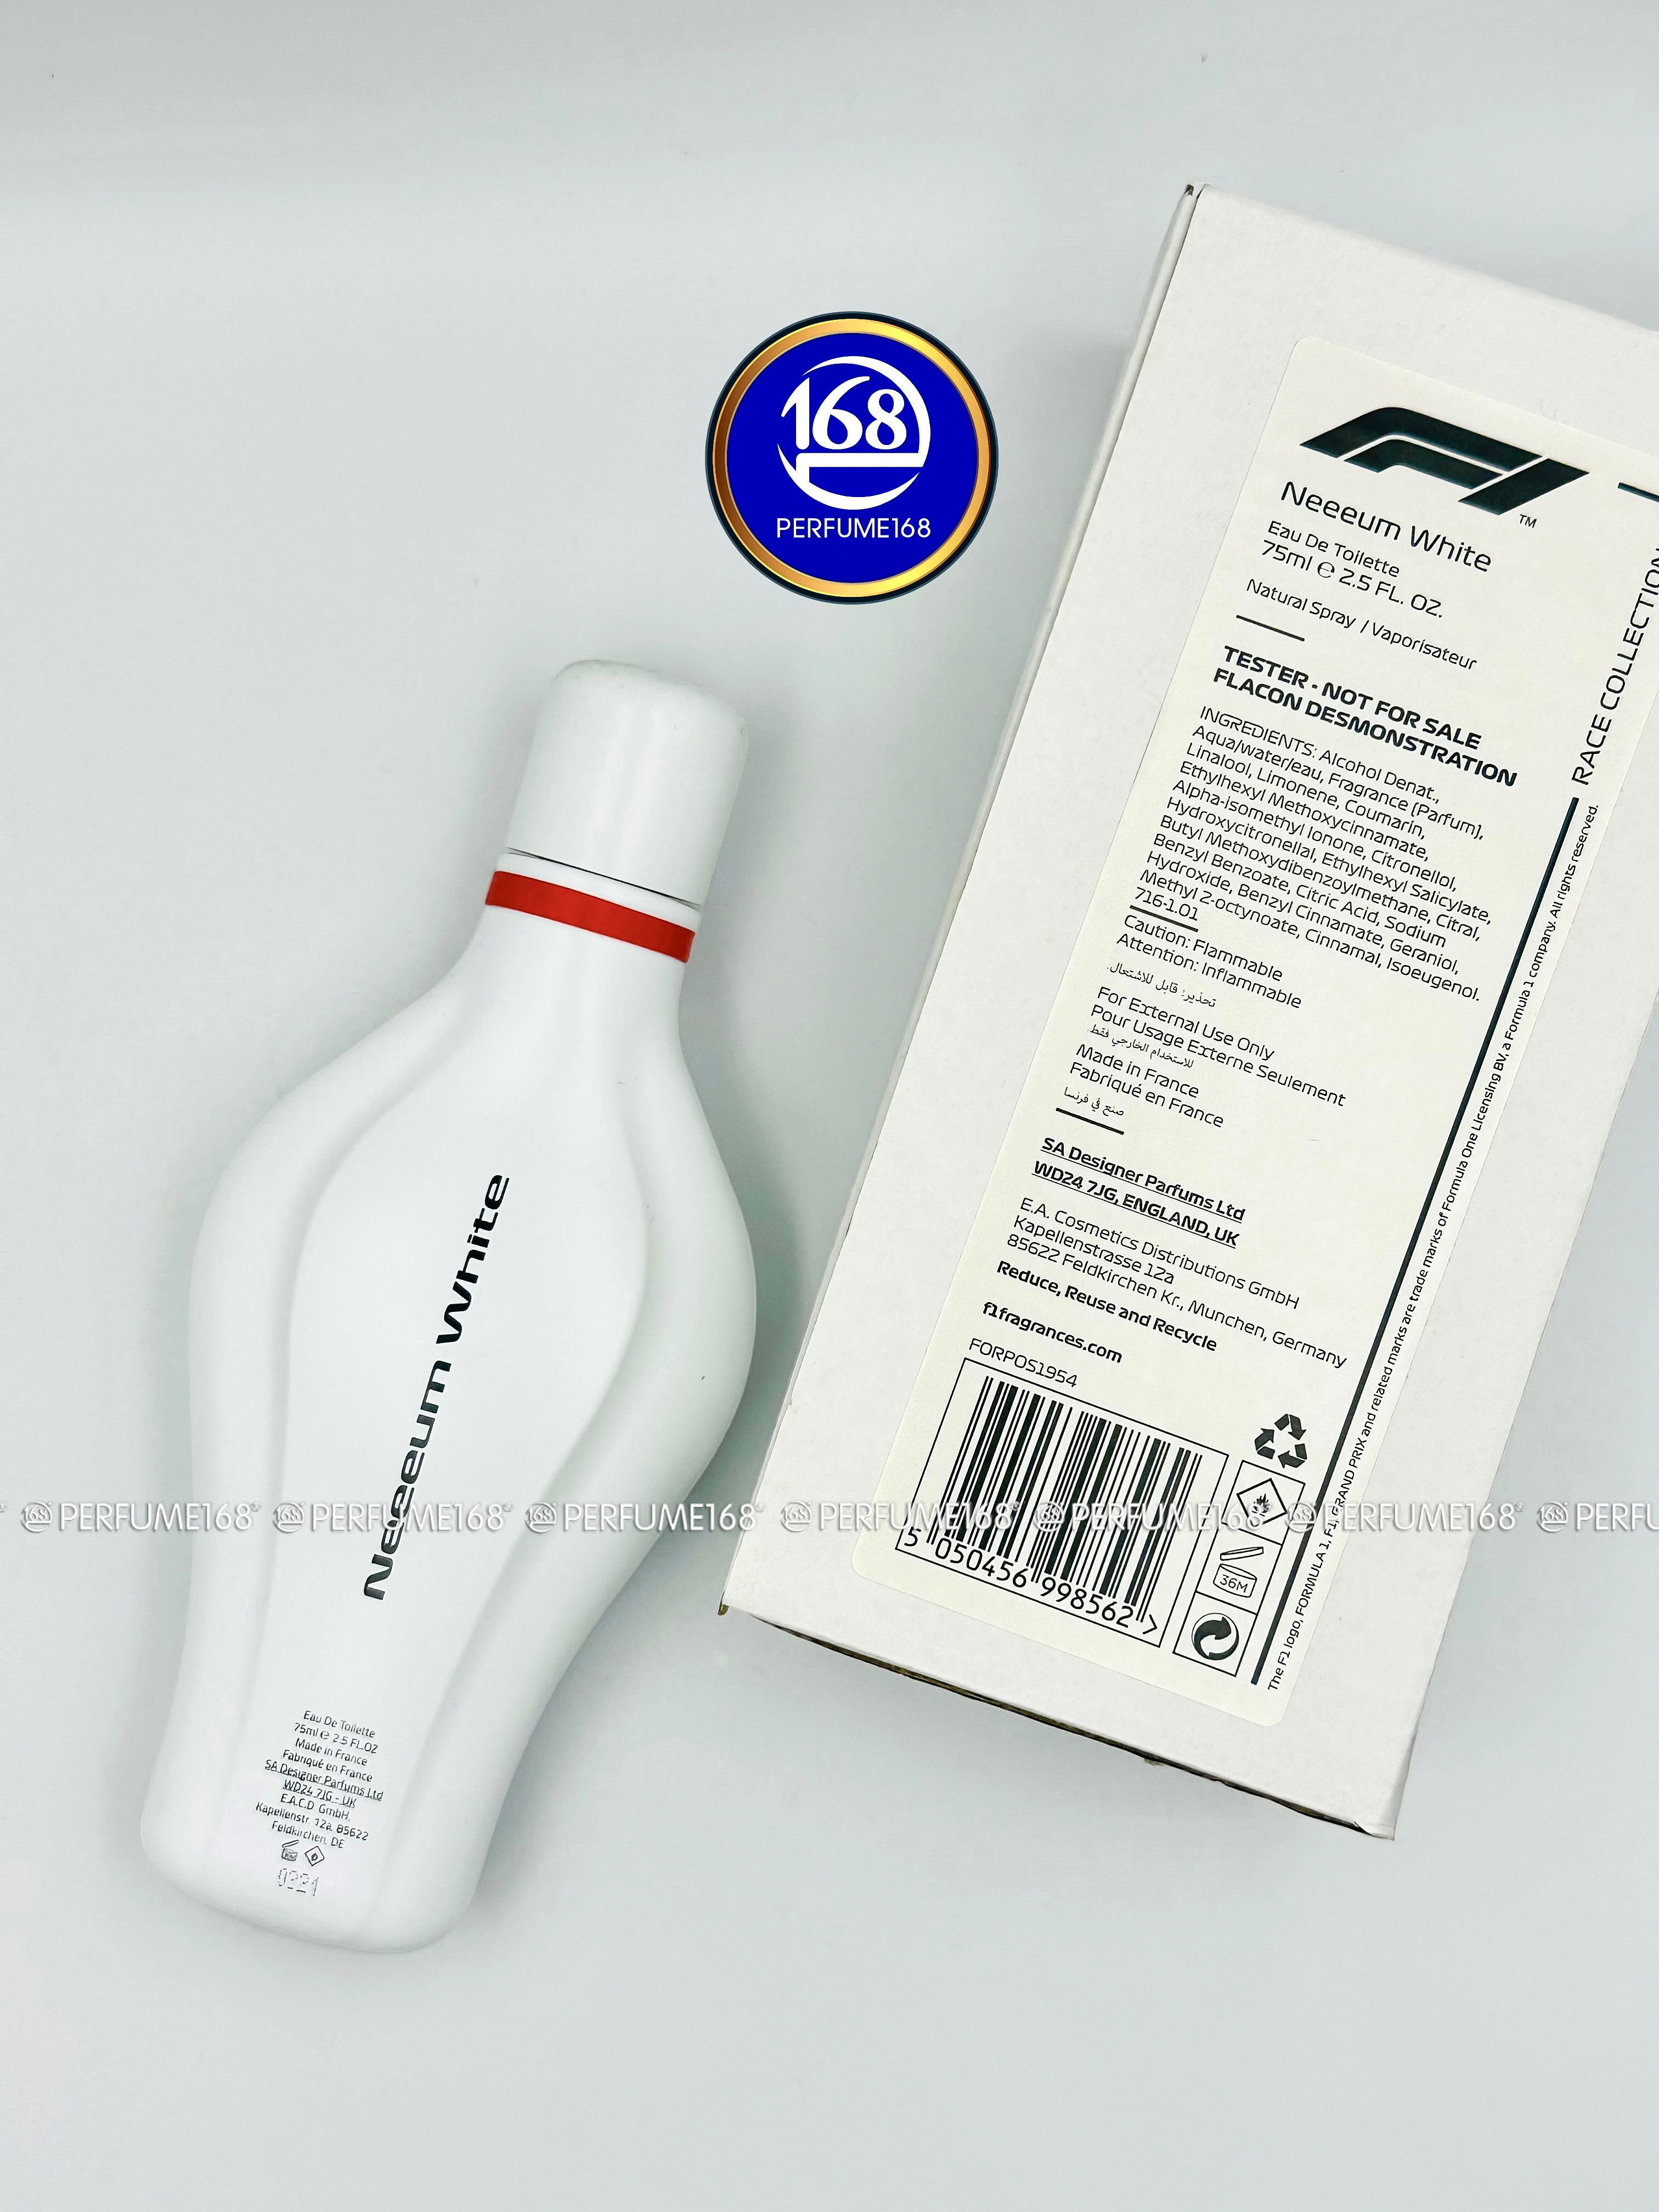 Nước Formula F1 chính Mỹ…Giá 100% tốt nhập 1 hãng khẩu White hoa - Neeeum Pháp, tại Perfume168